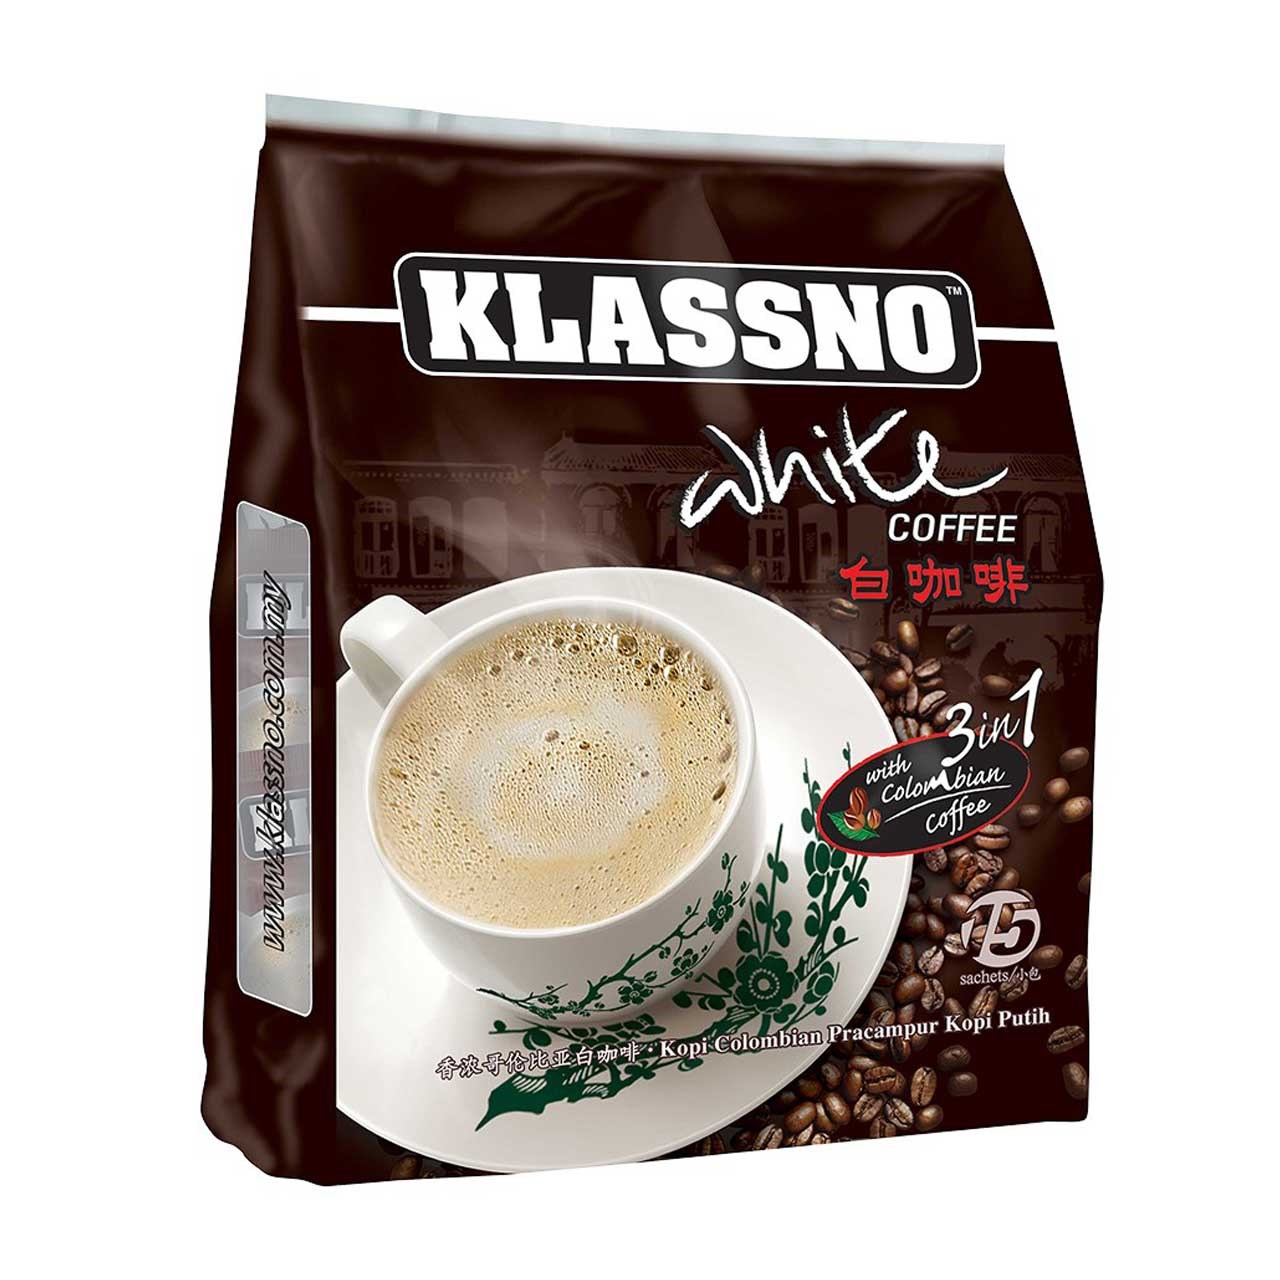 بسته ساشه قهوه سفید کلاسنو مدل Colombian Blend 3in1